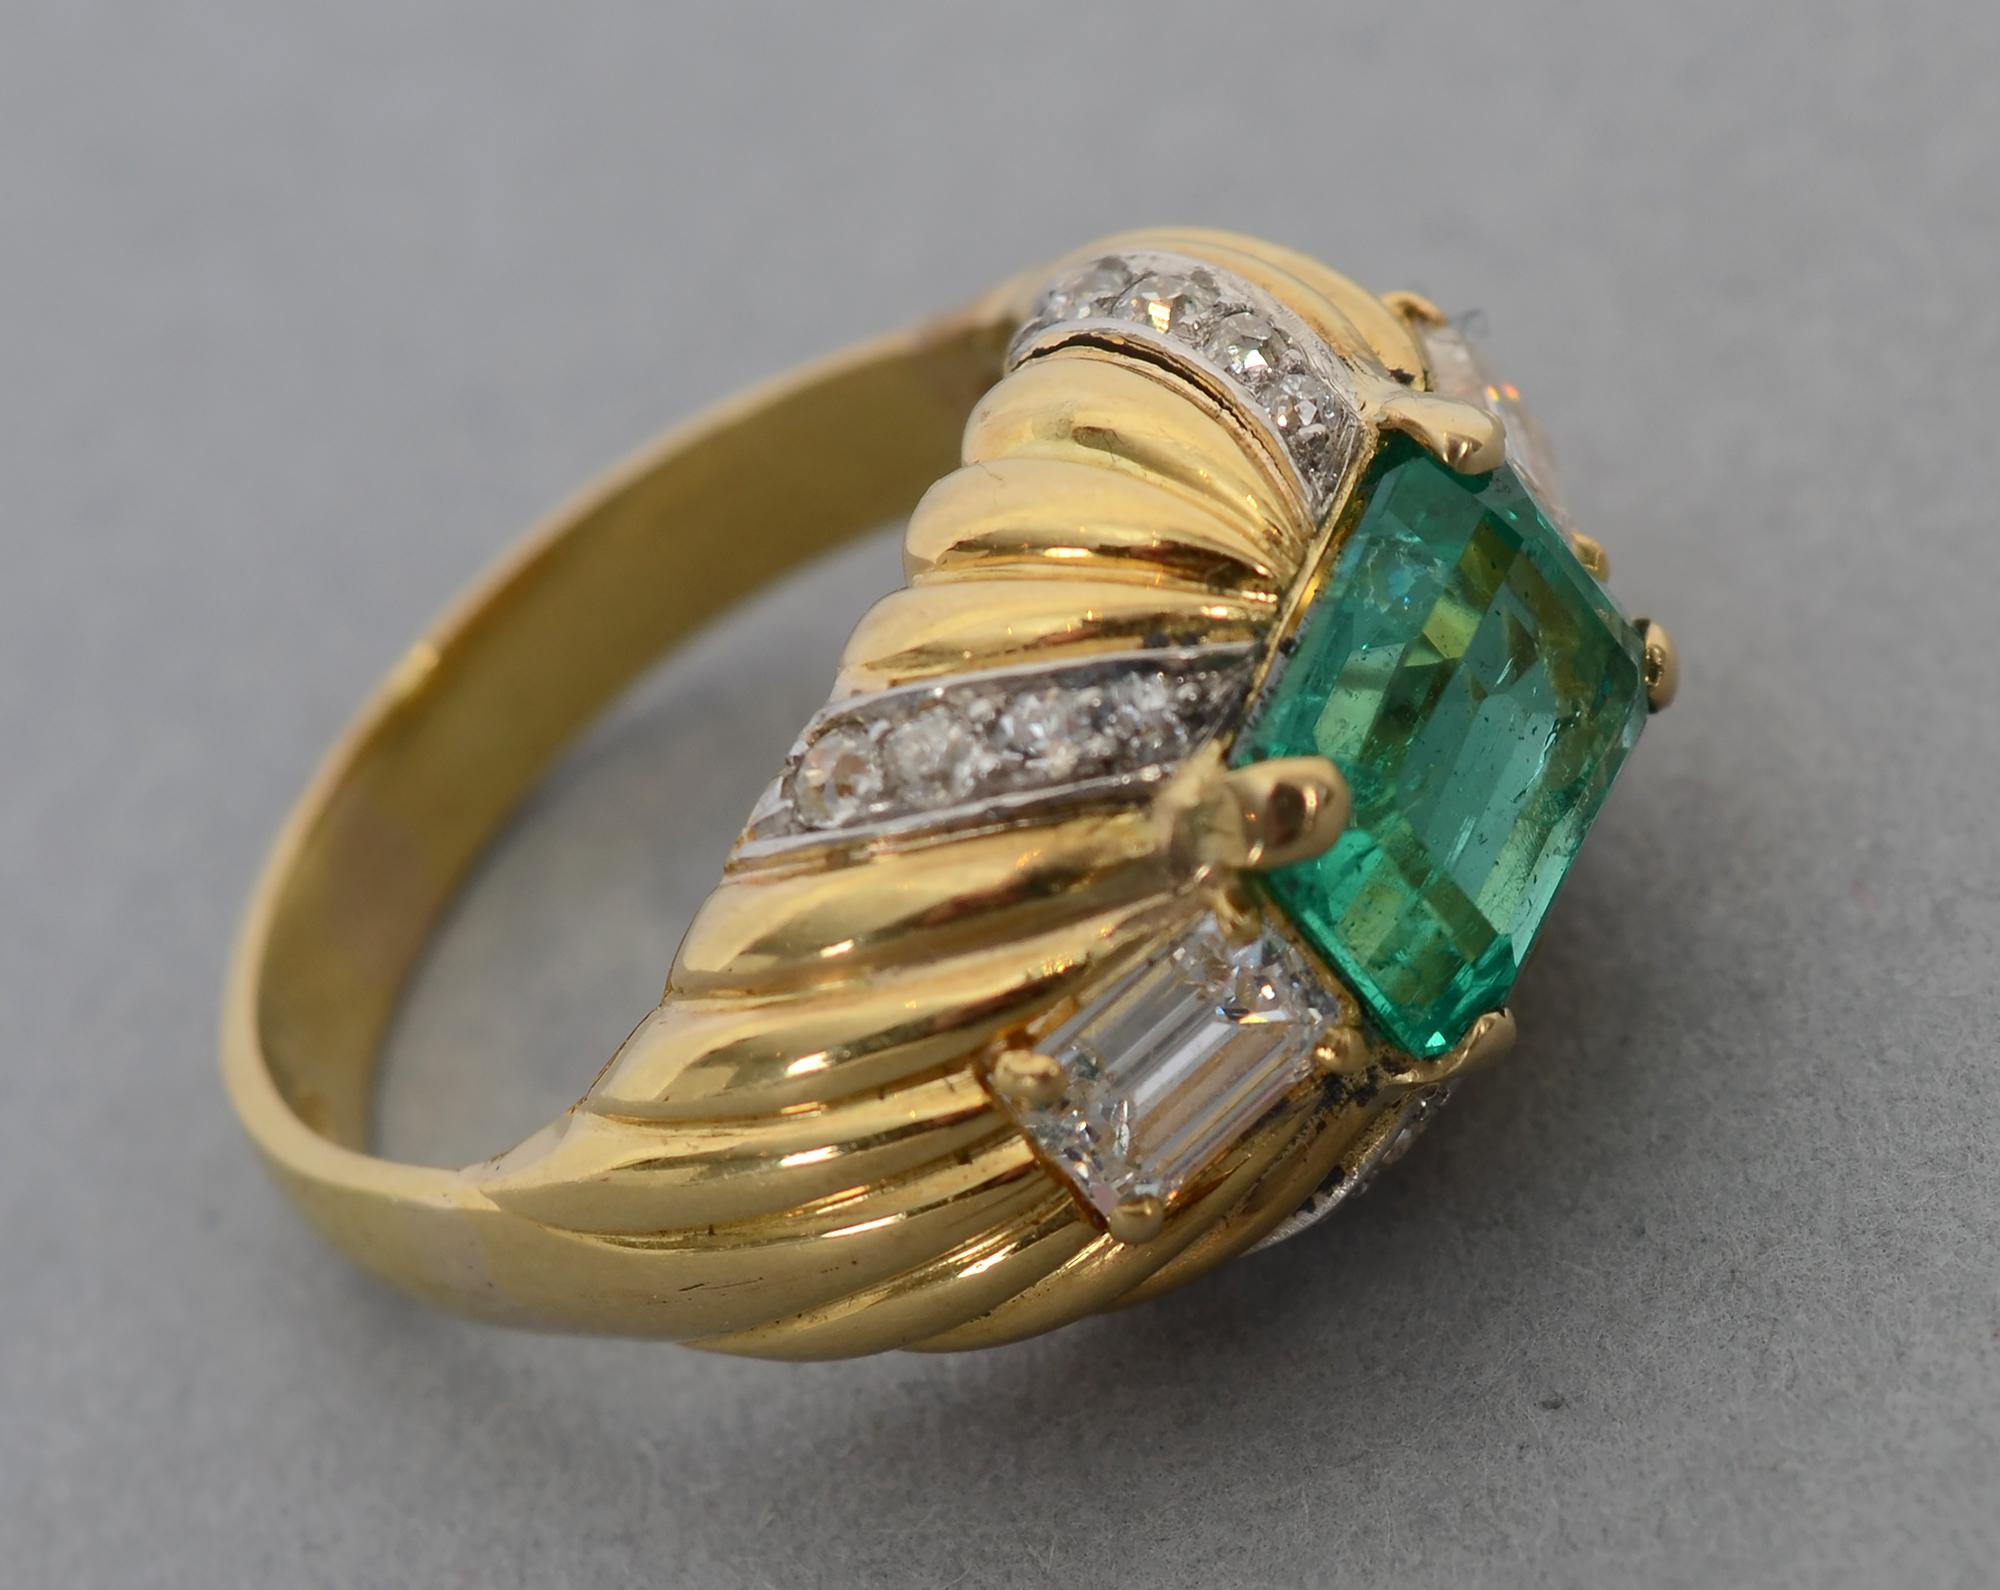 Atemberaubender Ring mit Smaragd und Diamanten, gefasst in 18 Karat Gold. Der zentrale Stein ist ein achteckiger kolumbianischer Smaragd von 2,56 Karat; GIA-geprüft, keine Hitze.  Der Stein misst 9,68 x 7,62 x 4,66 mm. Auf jeder Seite befindet sich